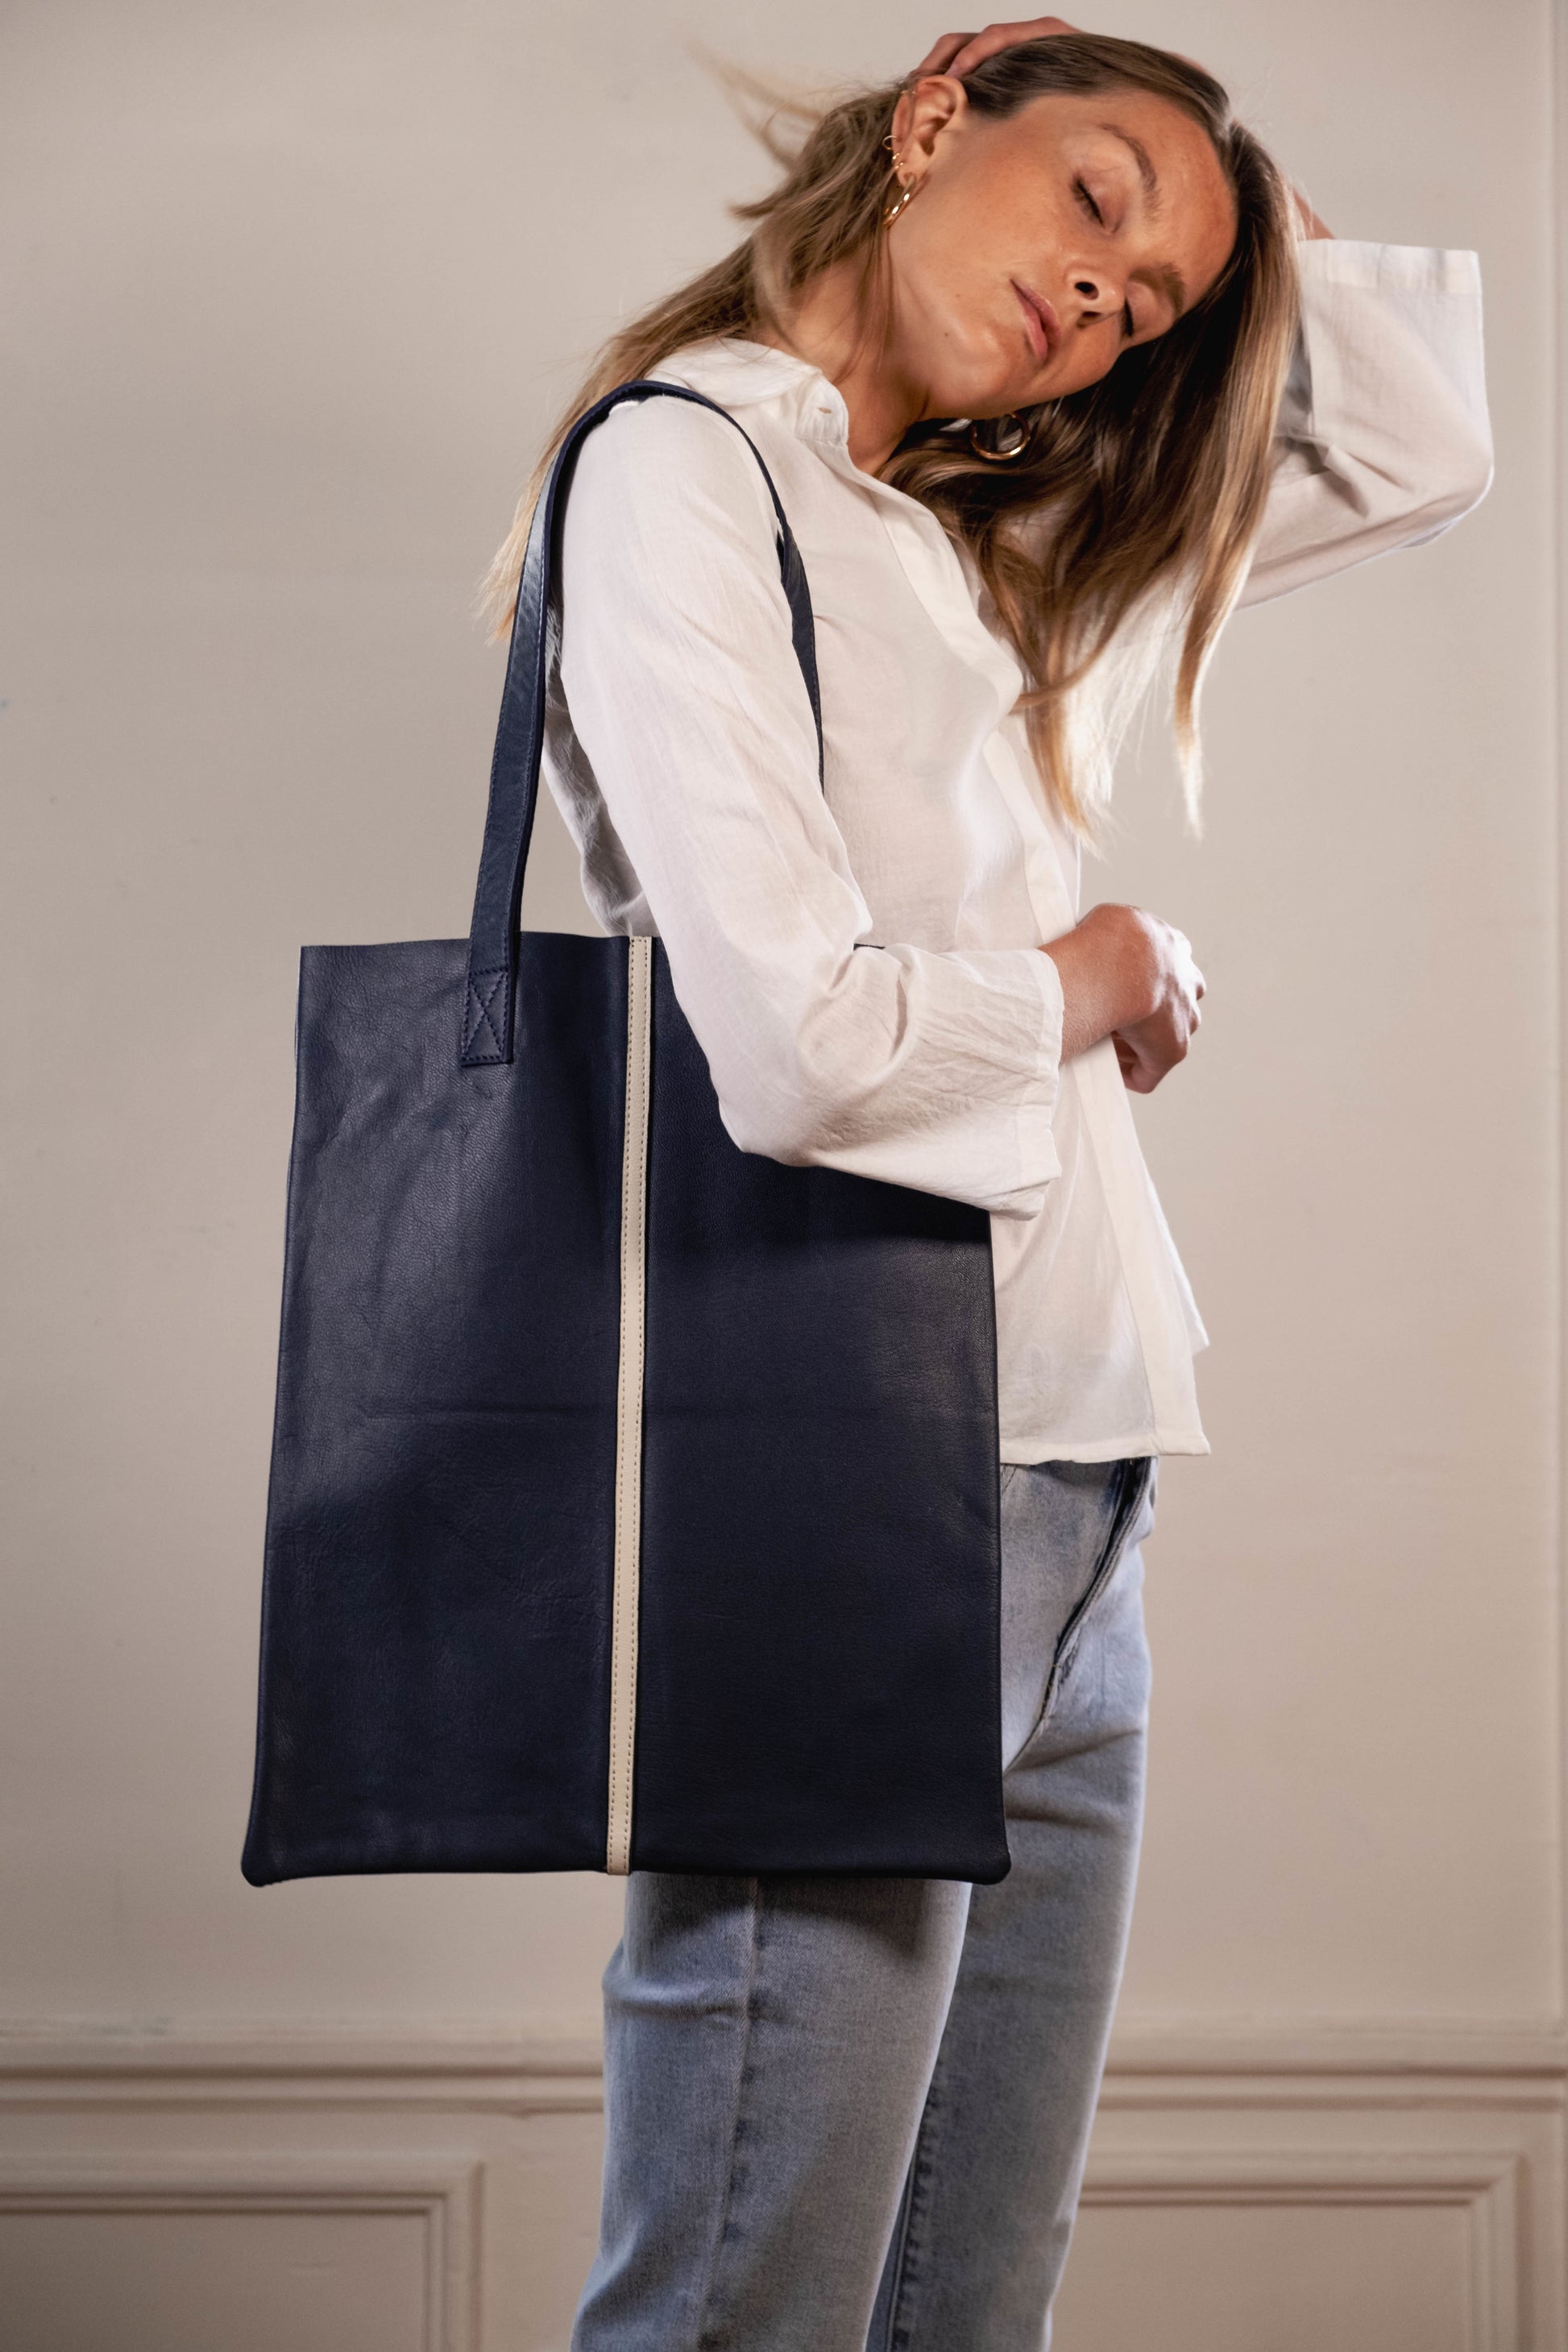 tote bag sac cuir bleu marine maroquinerie accessoire femme creation paris